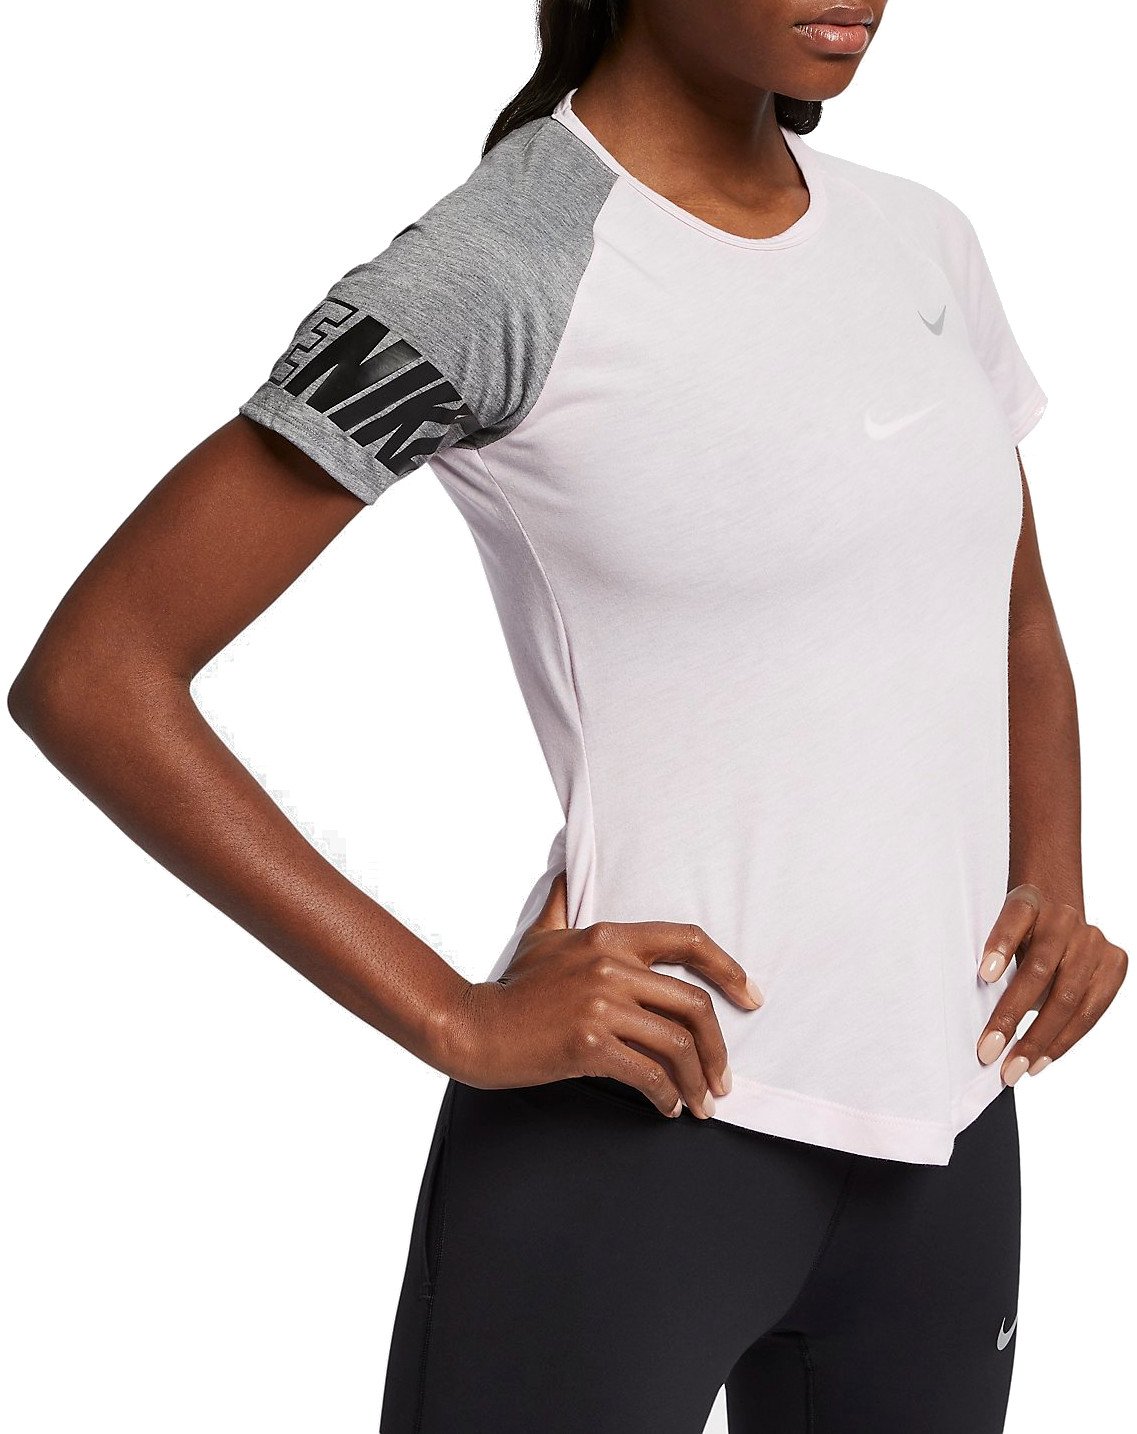 Dámské běžecké tričko s krátkým rukávem Nike Miler